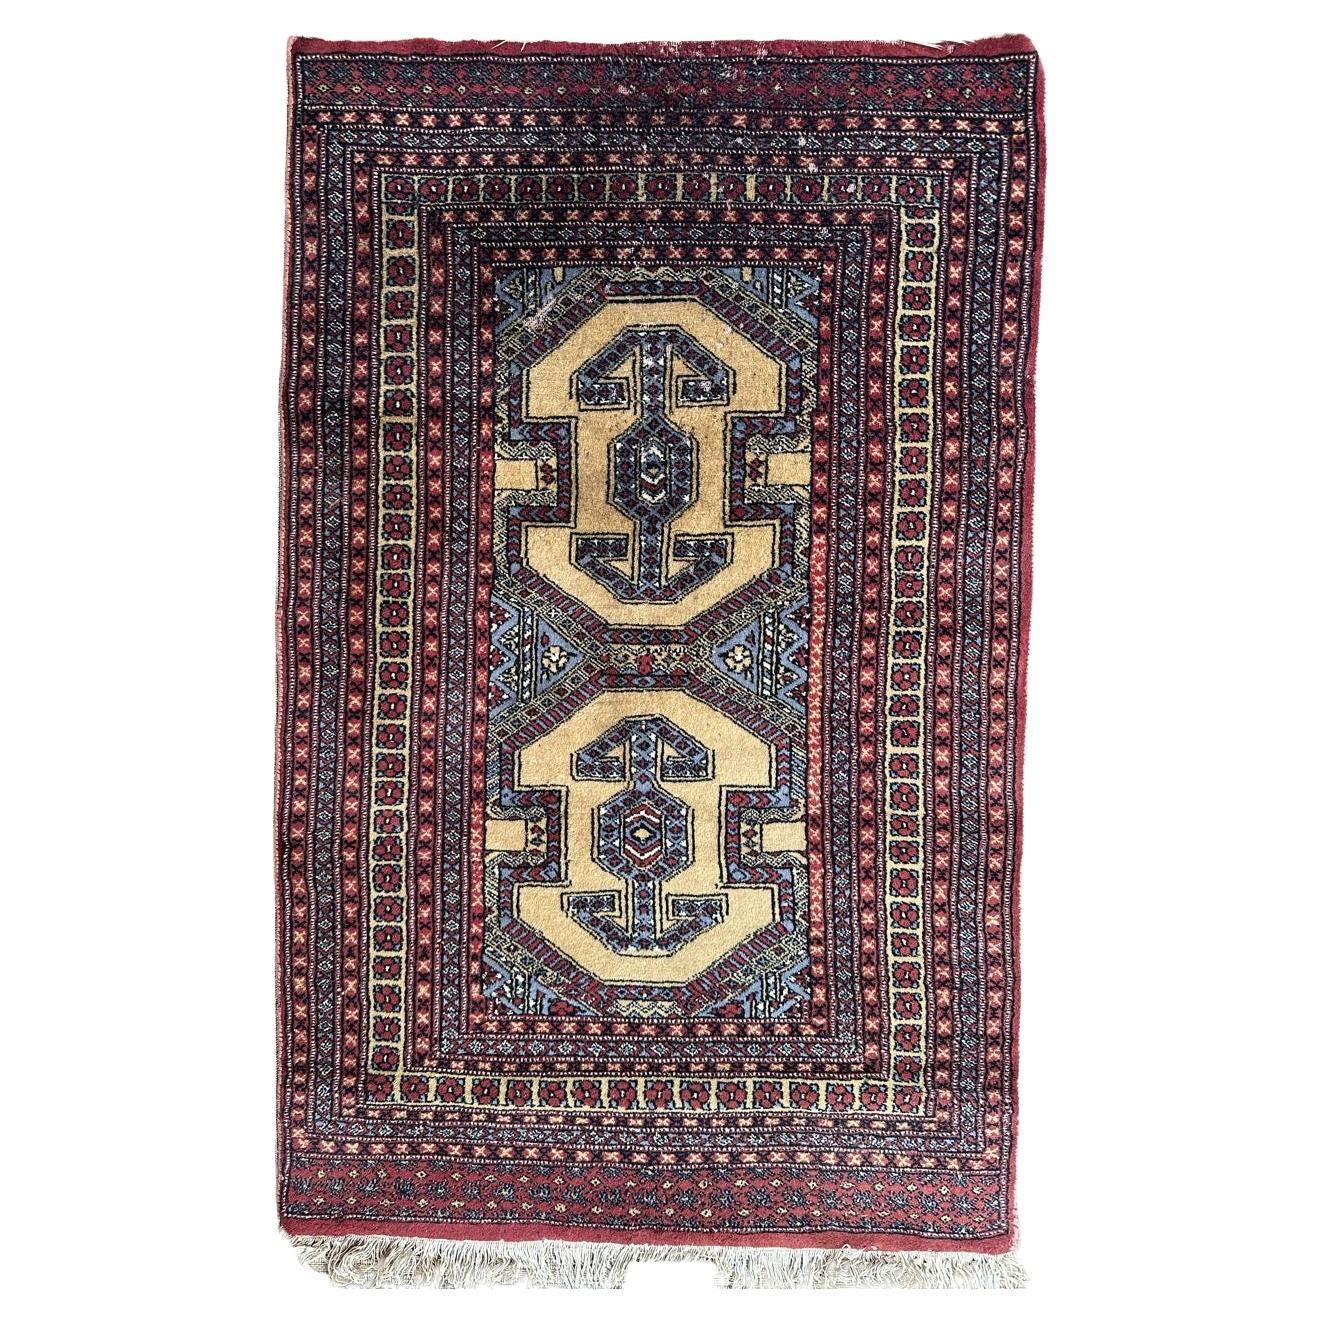 Bobyrug’s distressed vintage Pakistani rug 